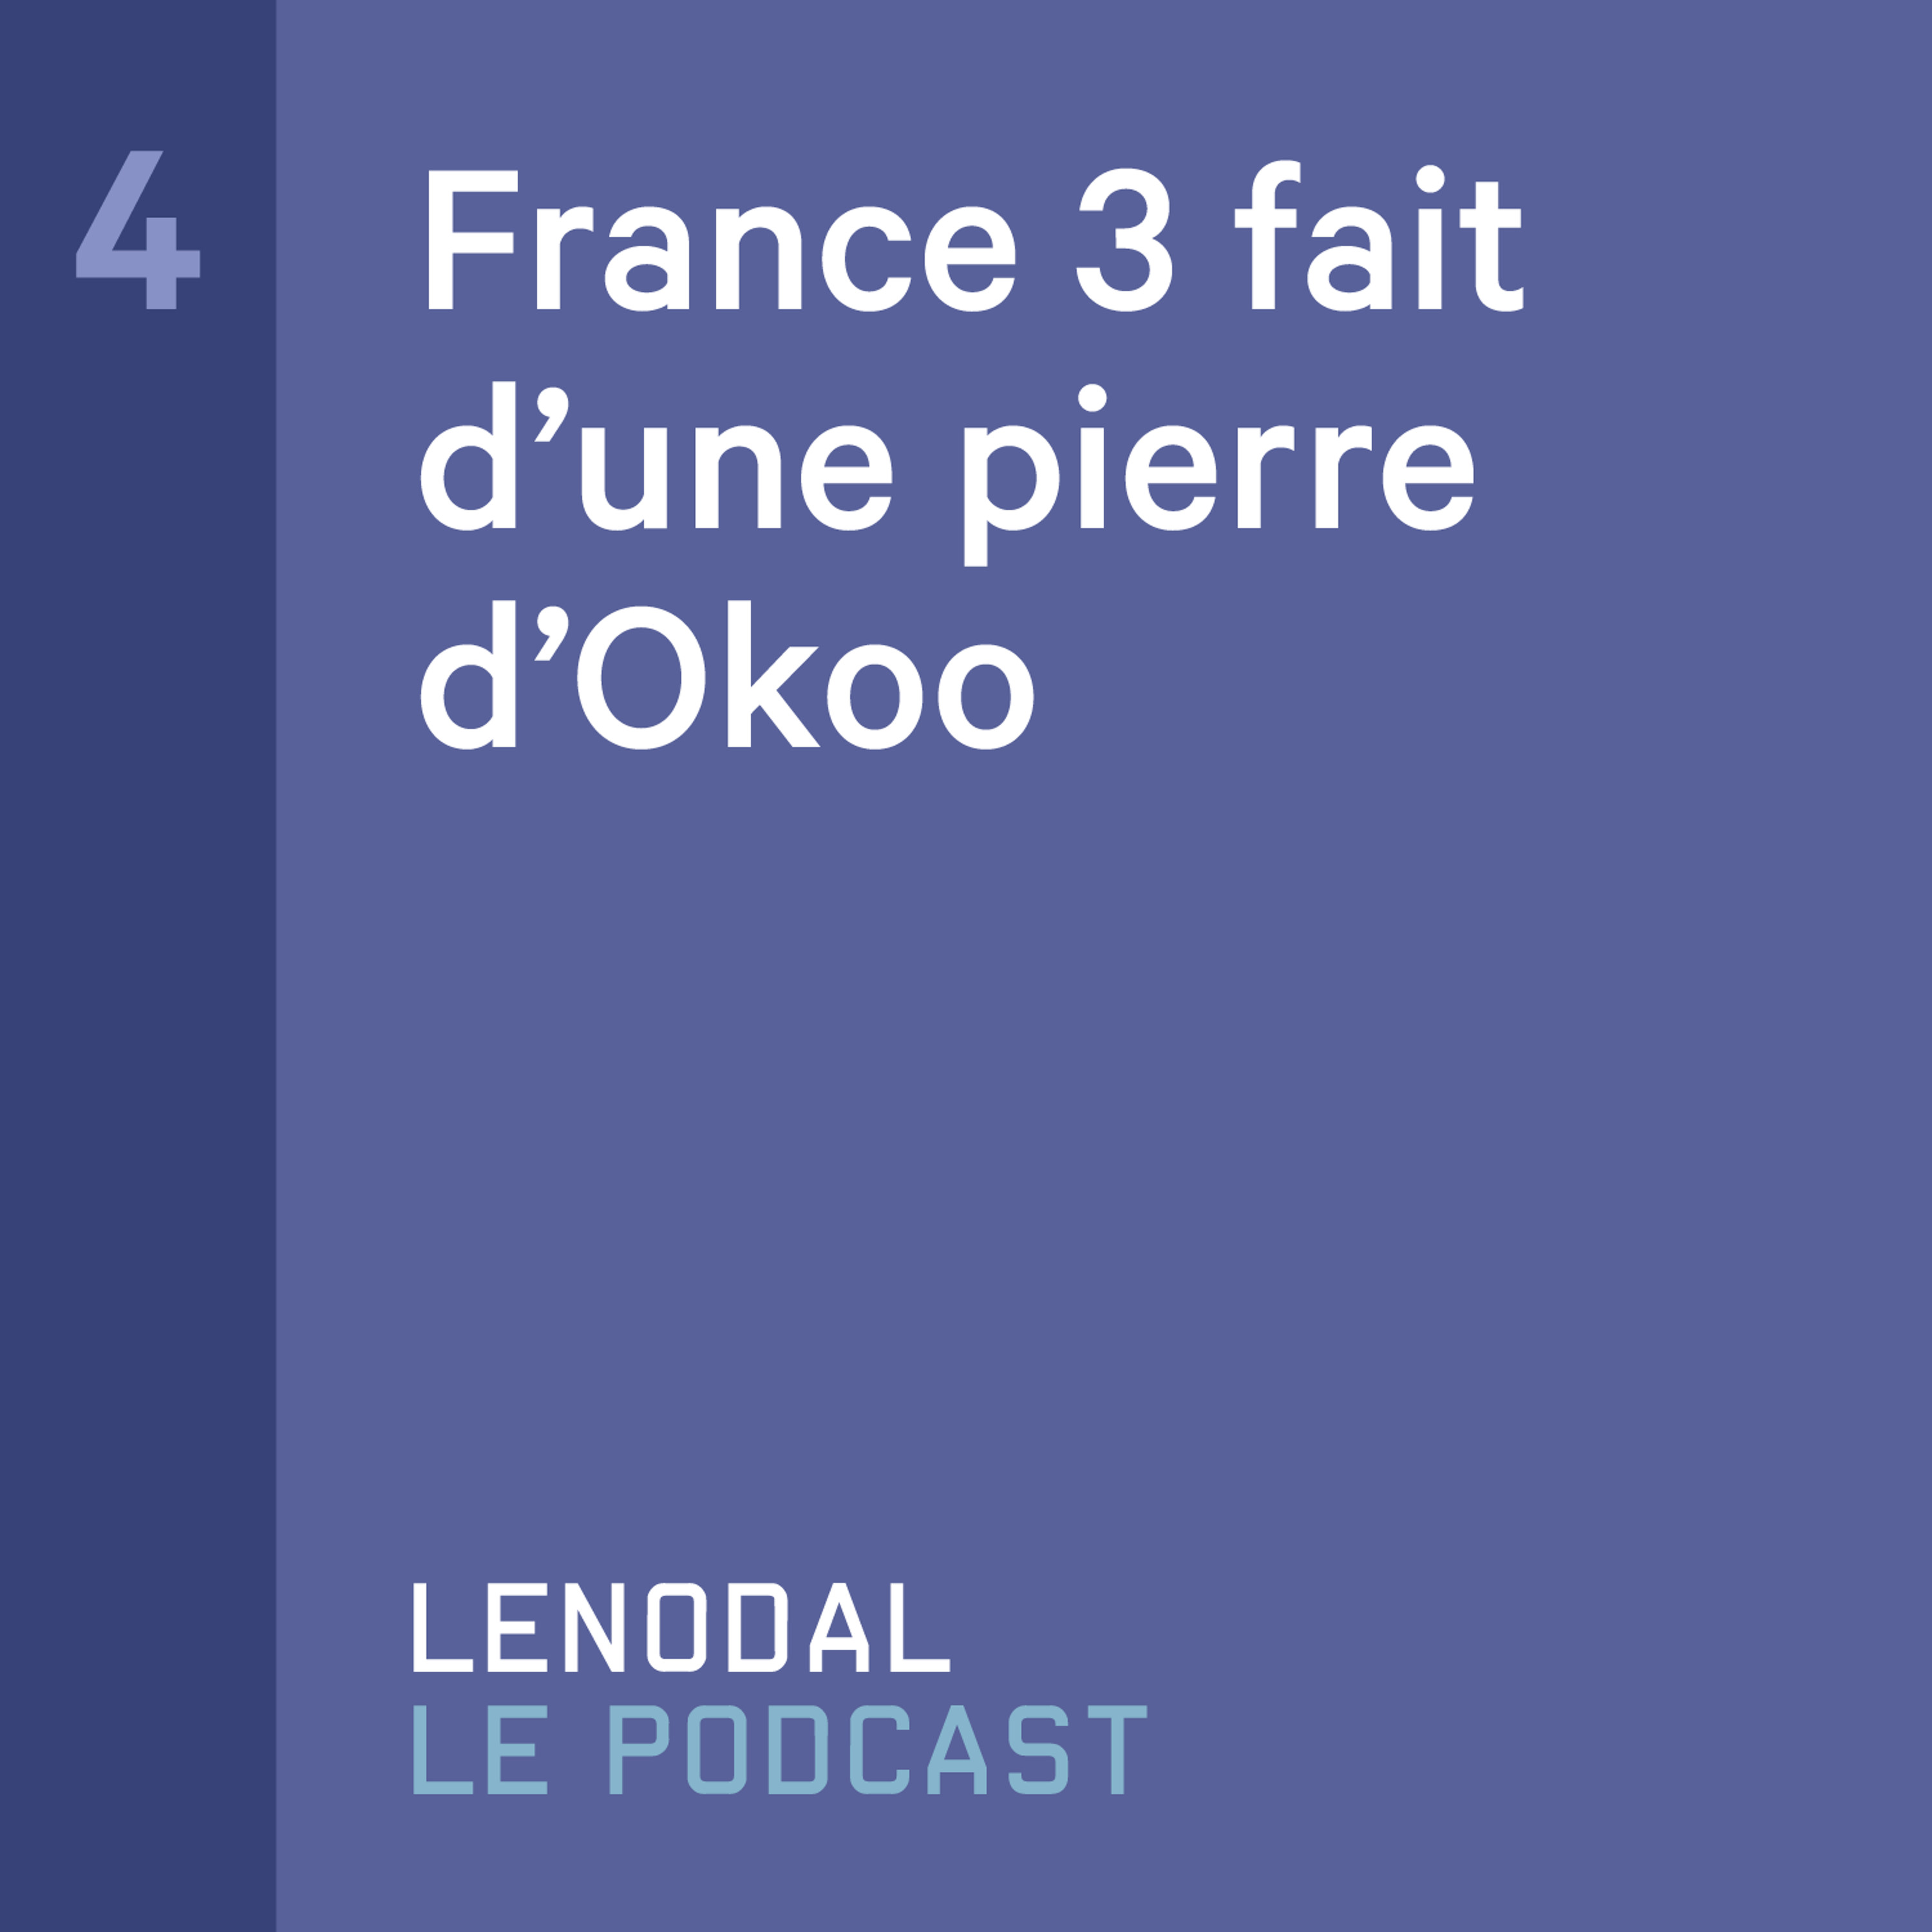 #4 - France 3 fait d'une pierre d'Okoo